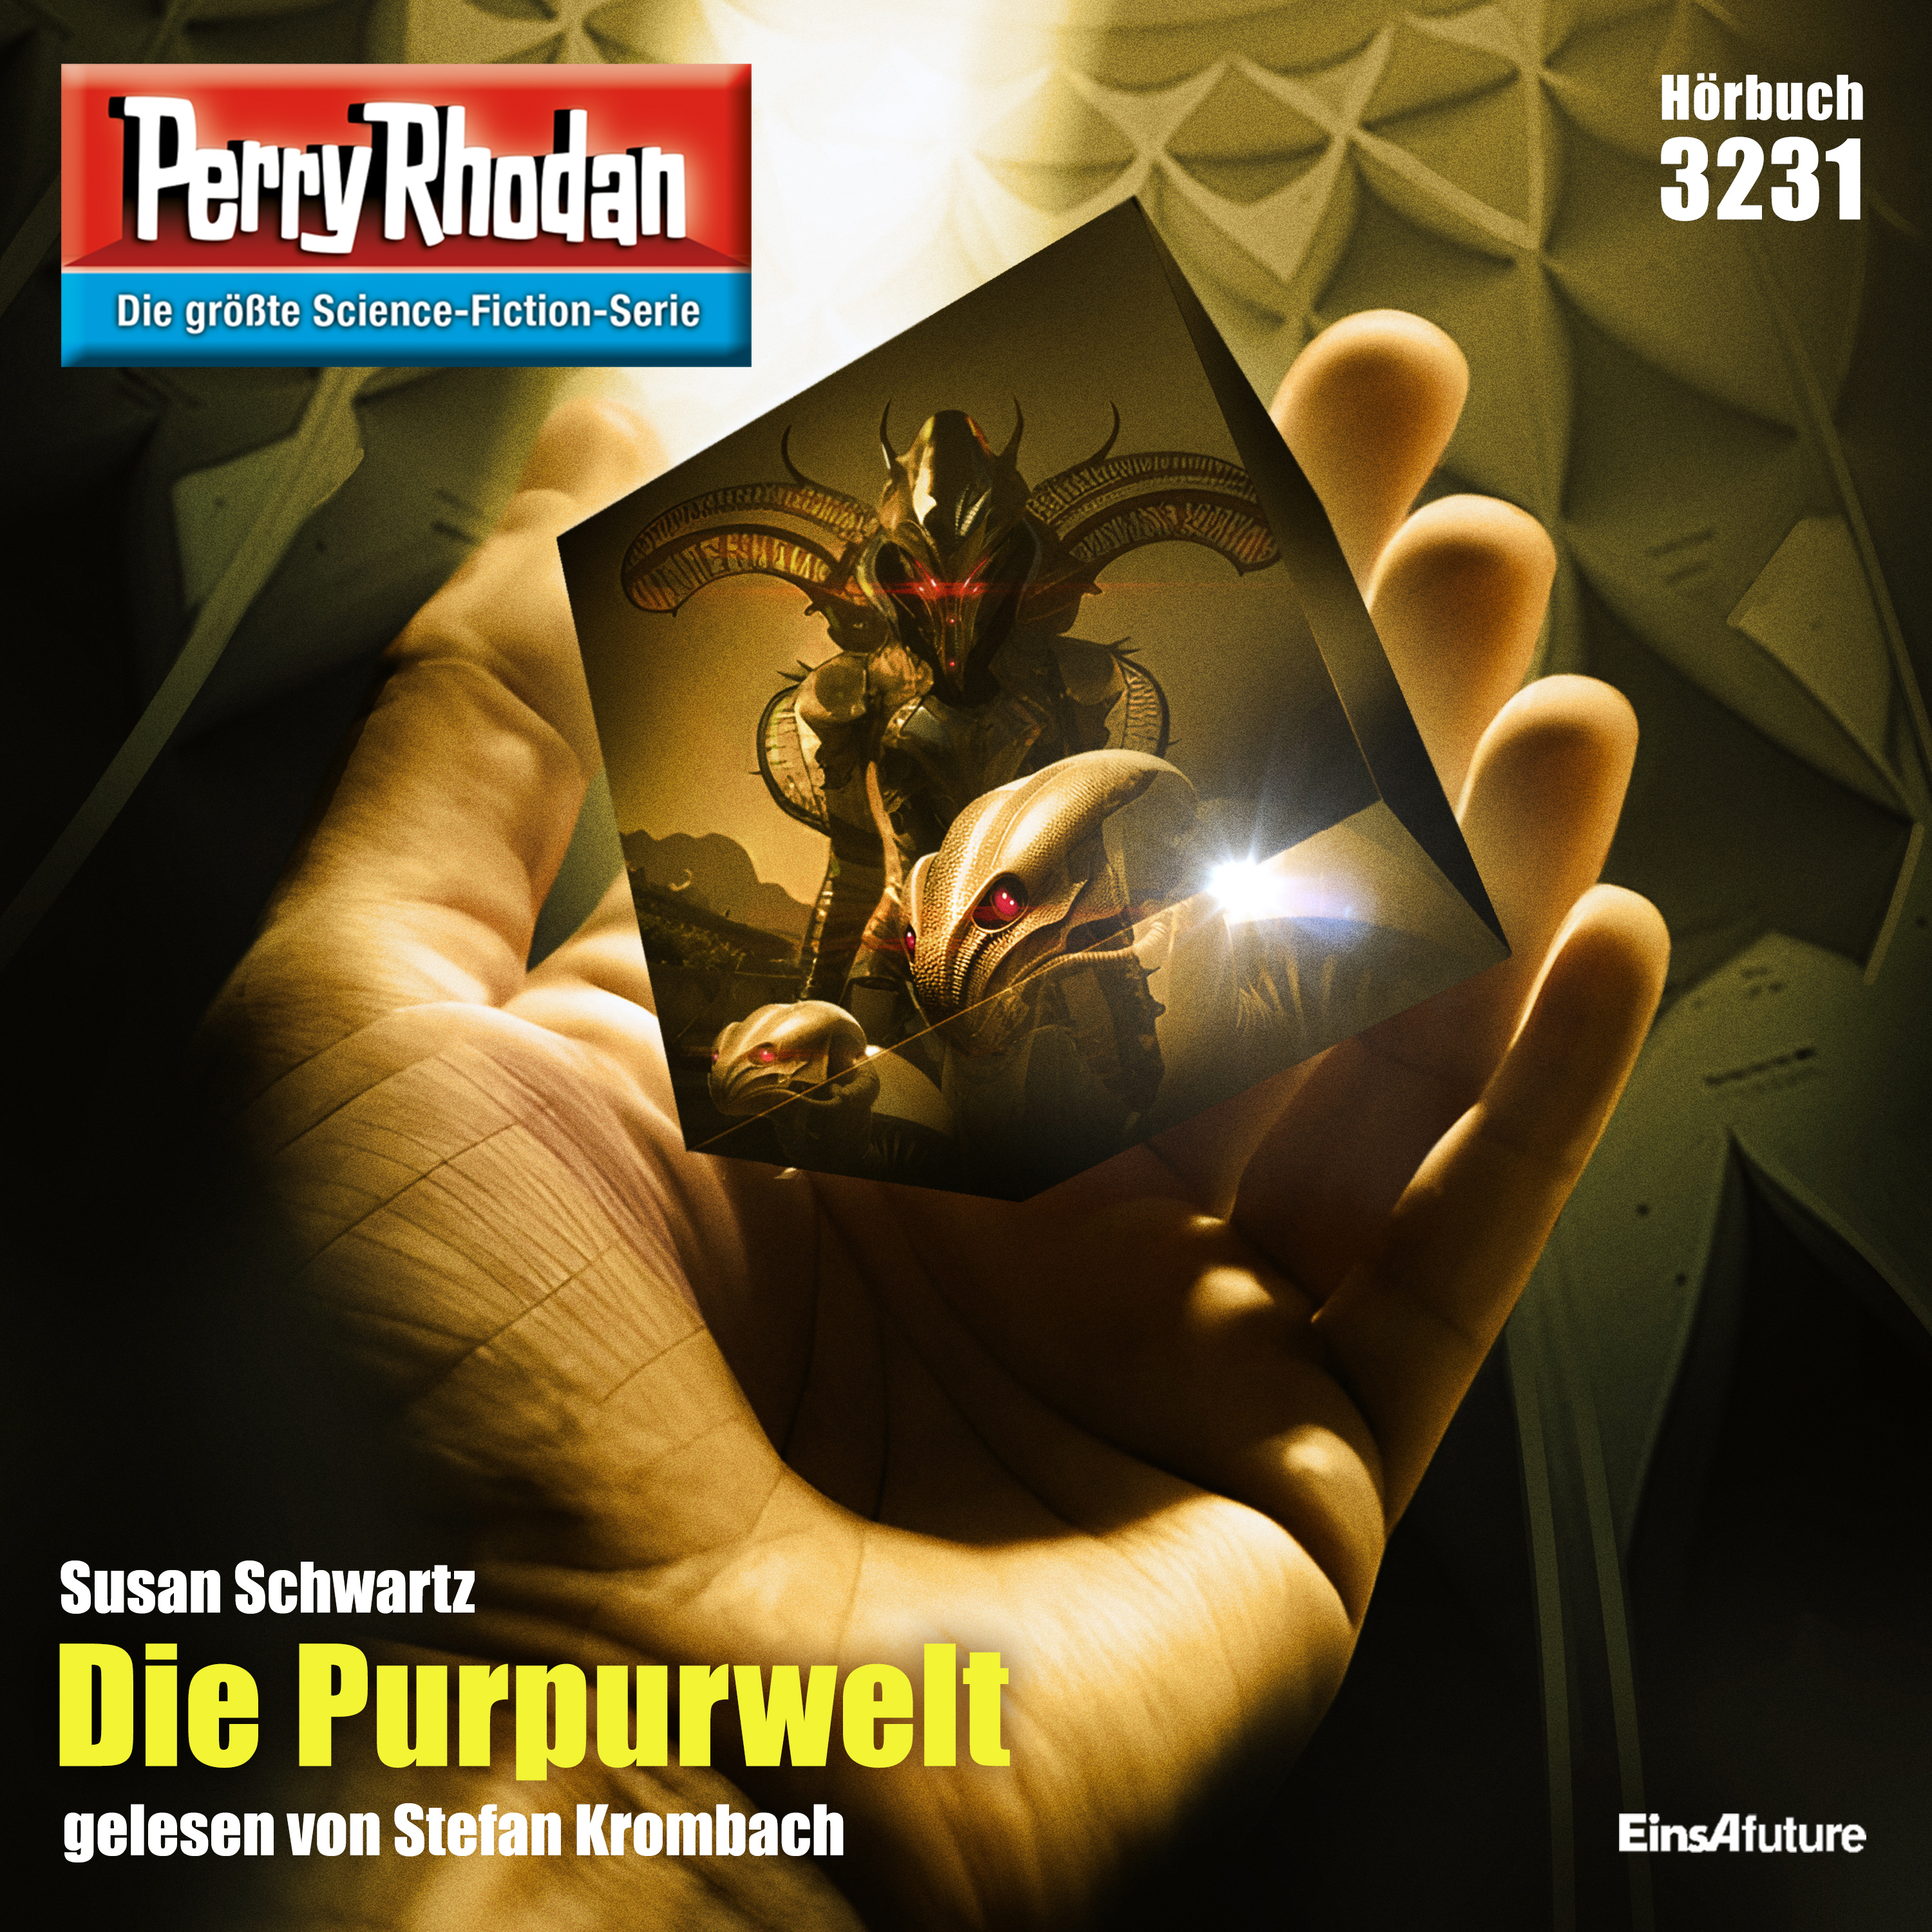 Perry Rhodan Nr. 3231: Die Purpurwelt (Hörbuch-Download)